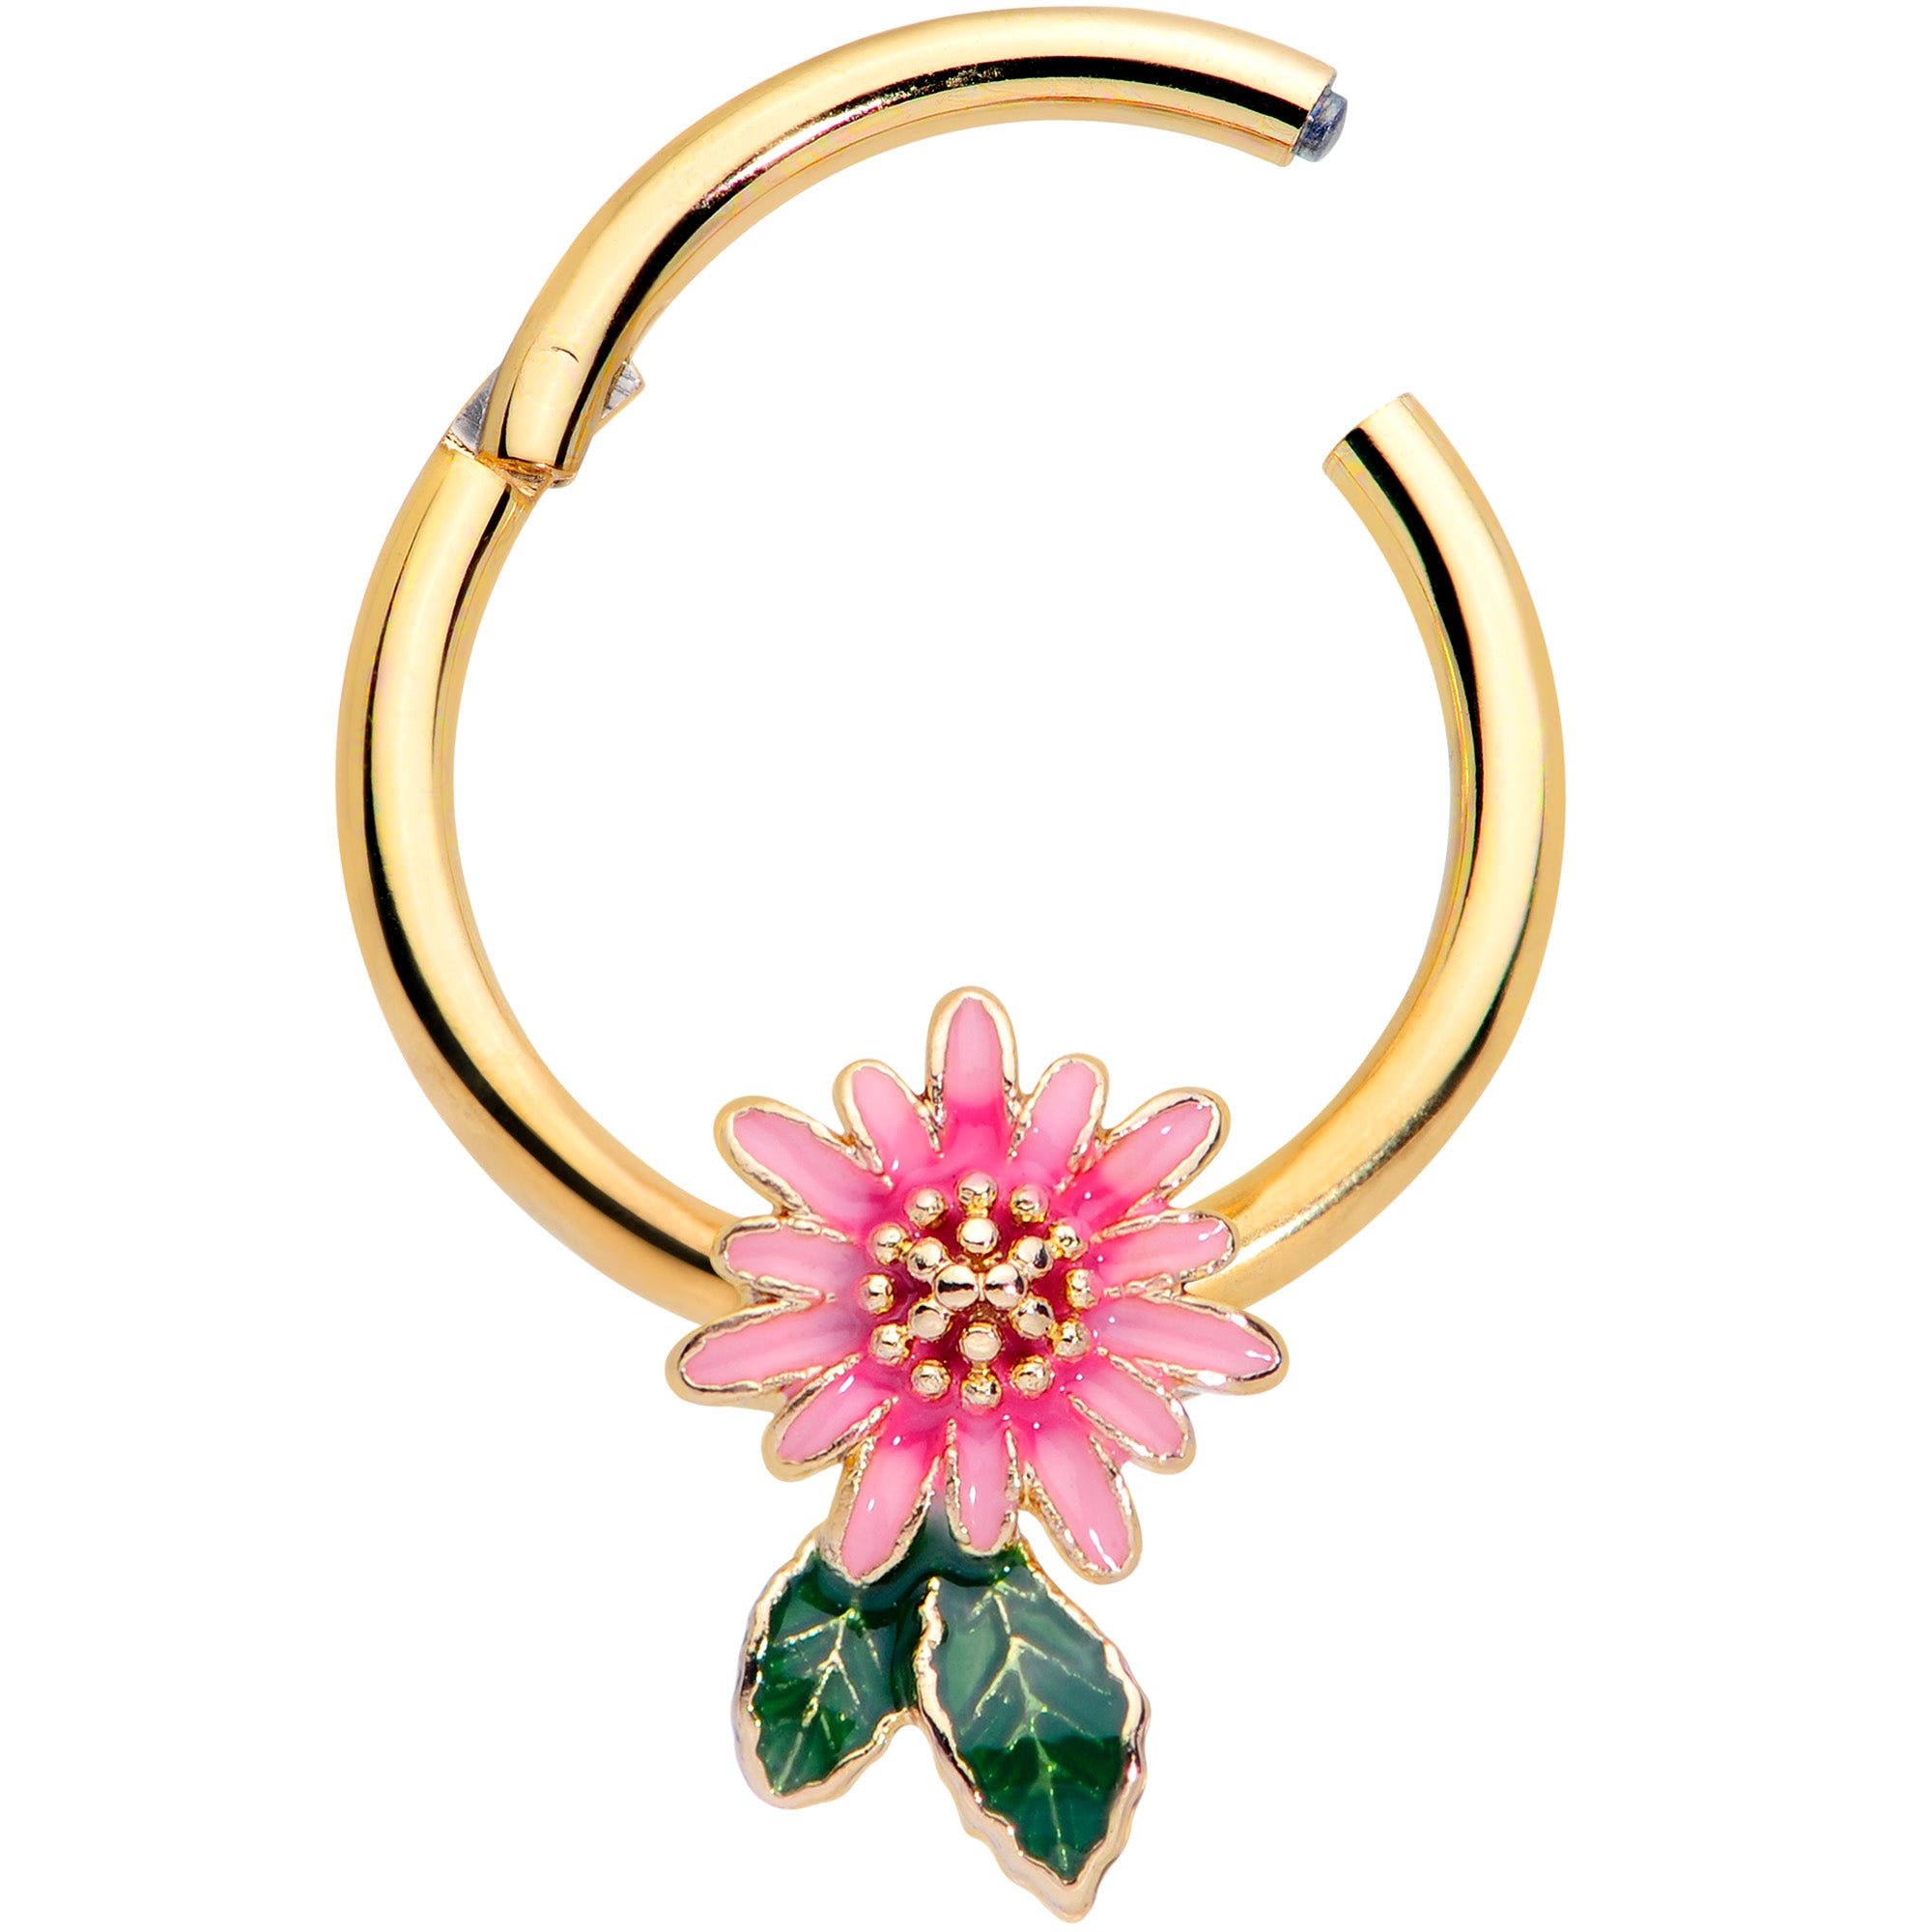 16 Gauge 3/8 Gold Tone Pink Spring Flower Hinged Segment Ring